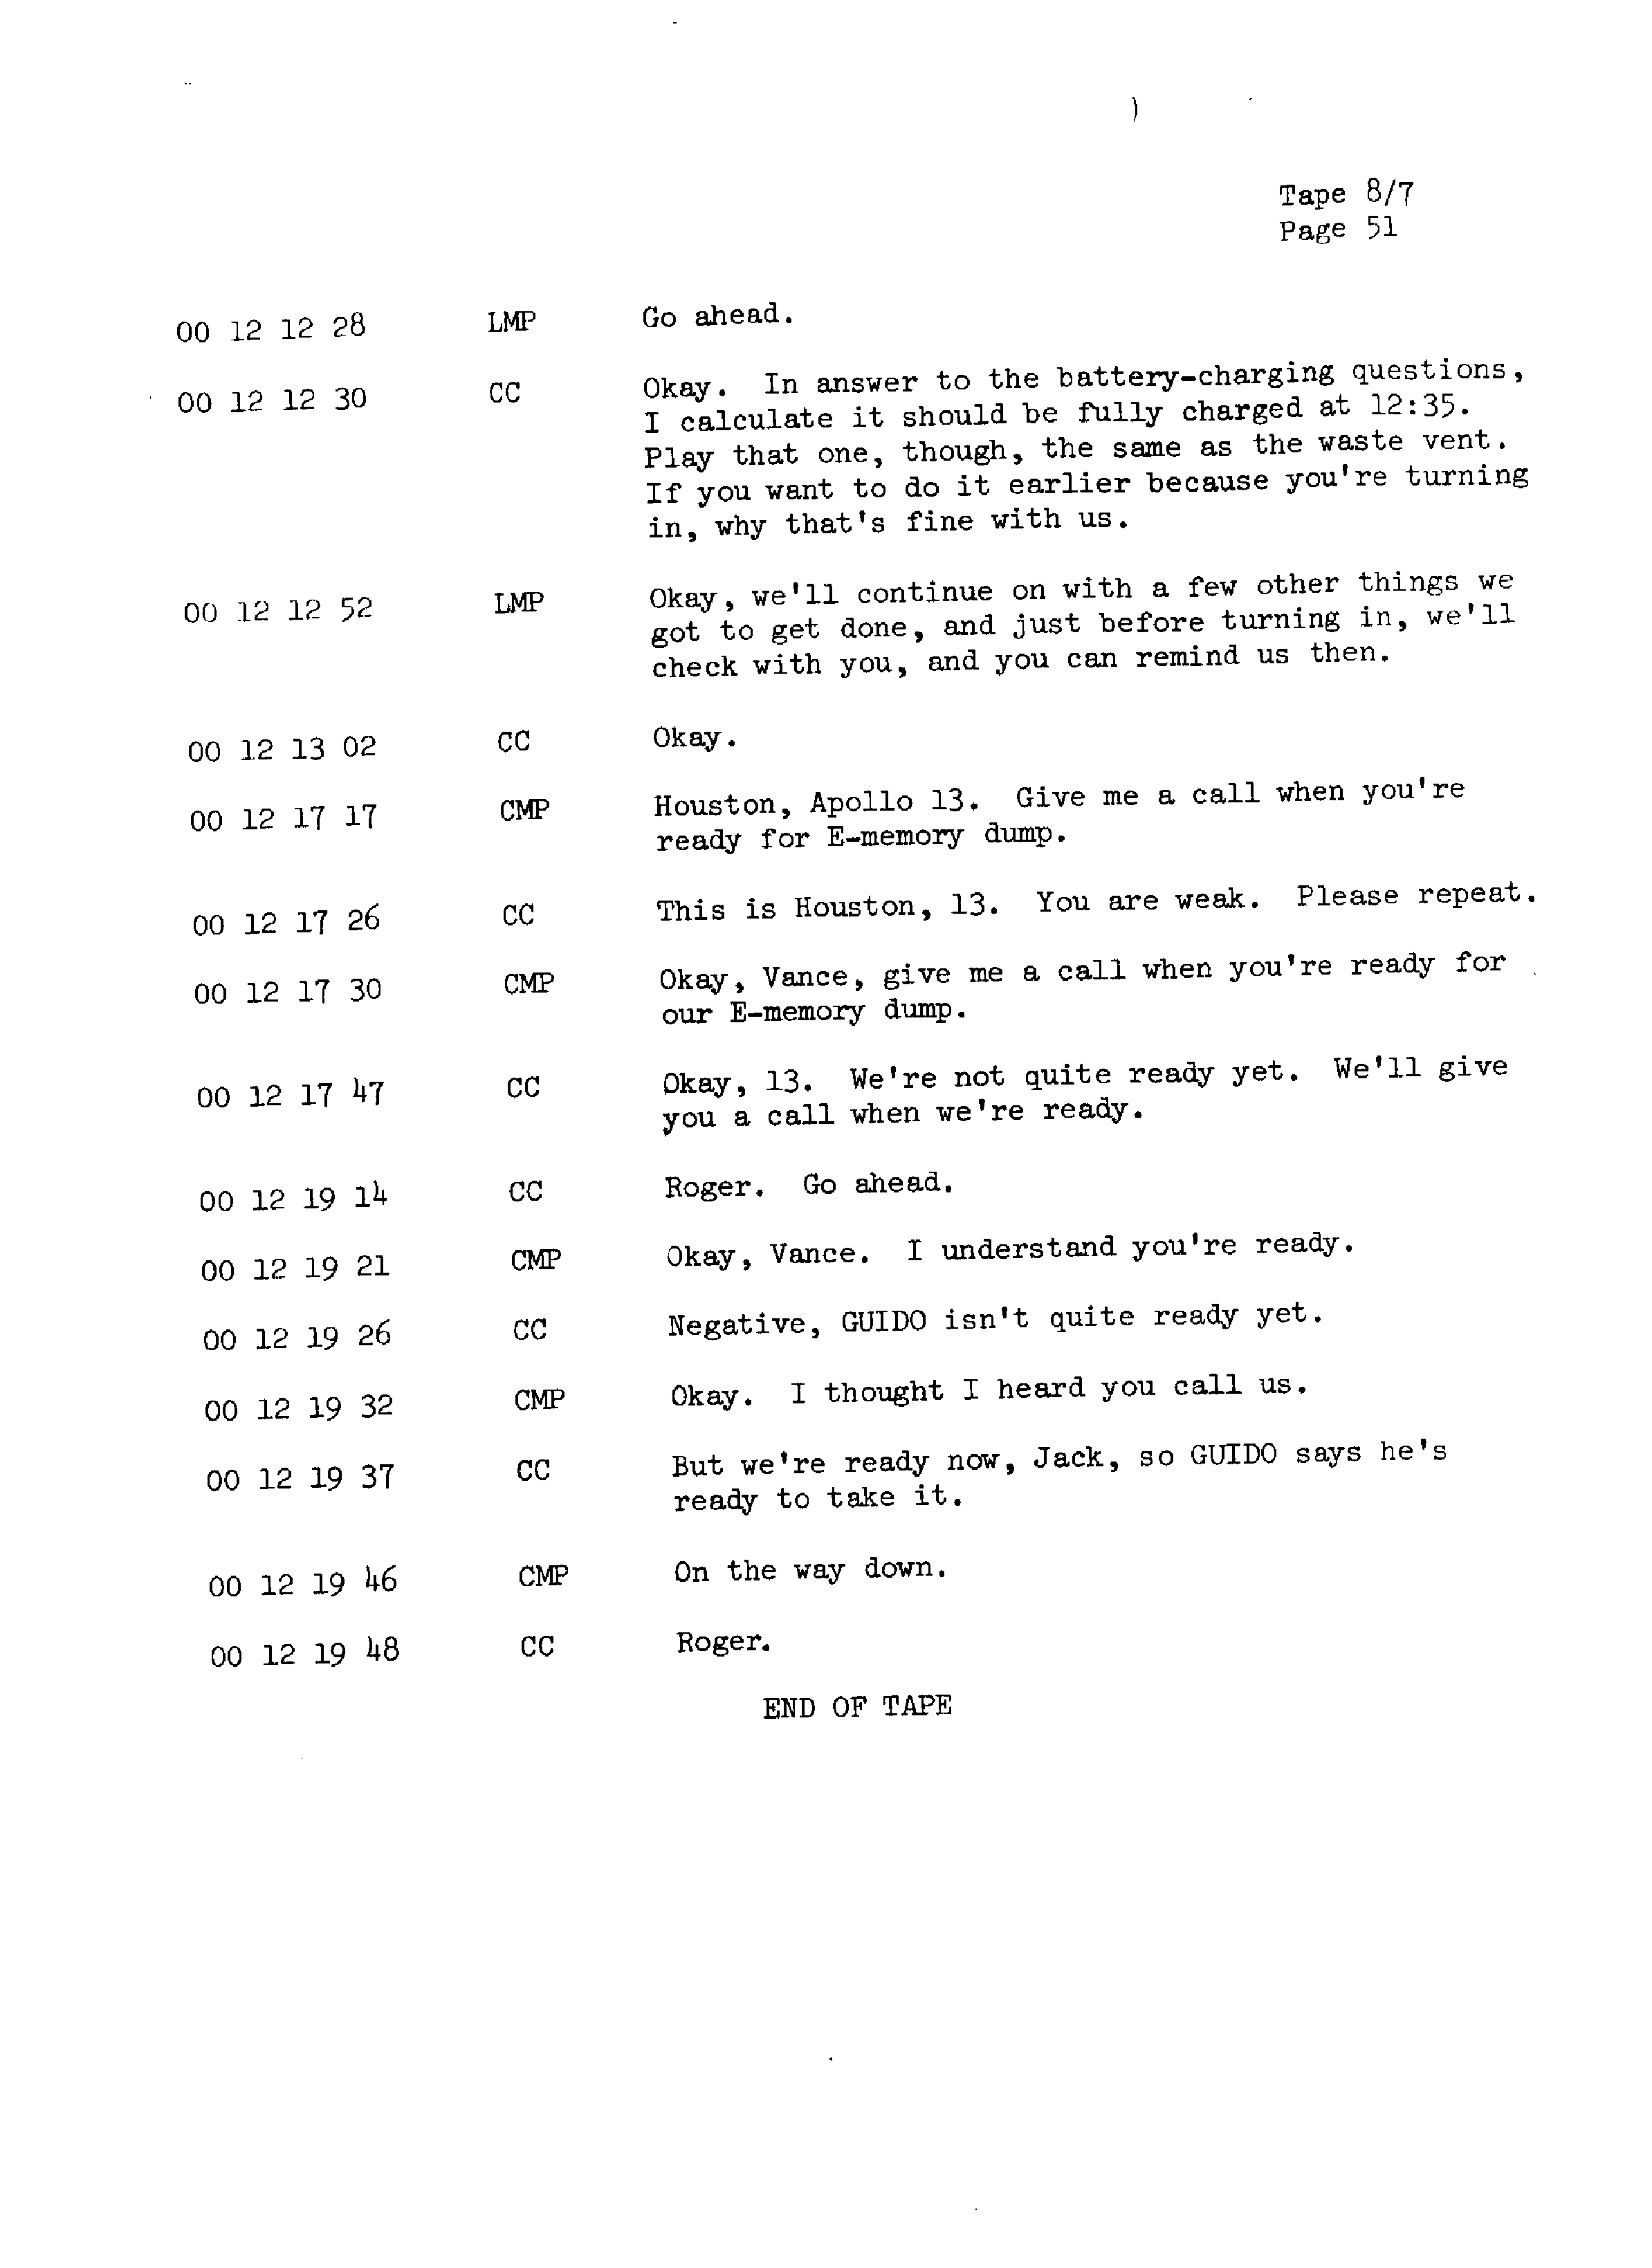 Page 58 of Apollo 13’s original transcript